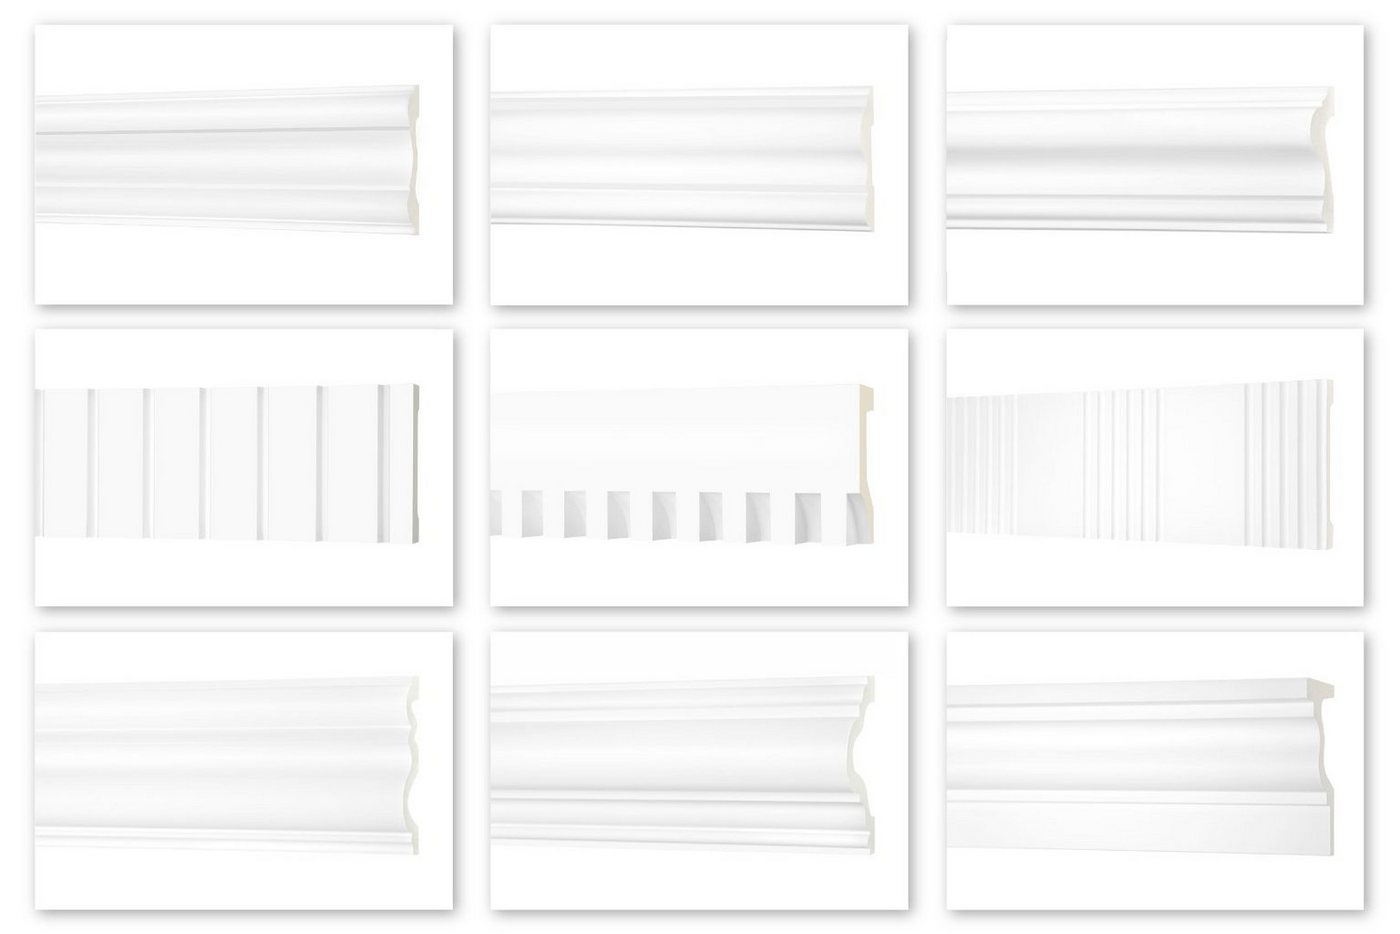 Hexim Perfect Stuckleiste AD 396, Flachleiste aus PU Serie 2 - Stuckleiste glatt, weißes Zierprofil, hart & stoßfest - Wandleiste vorgrundiert von Hexim Perfect